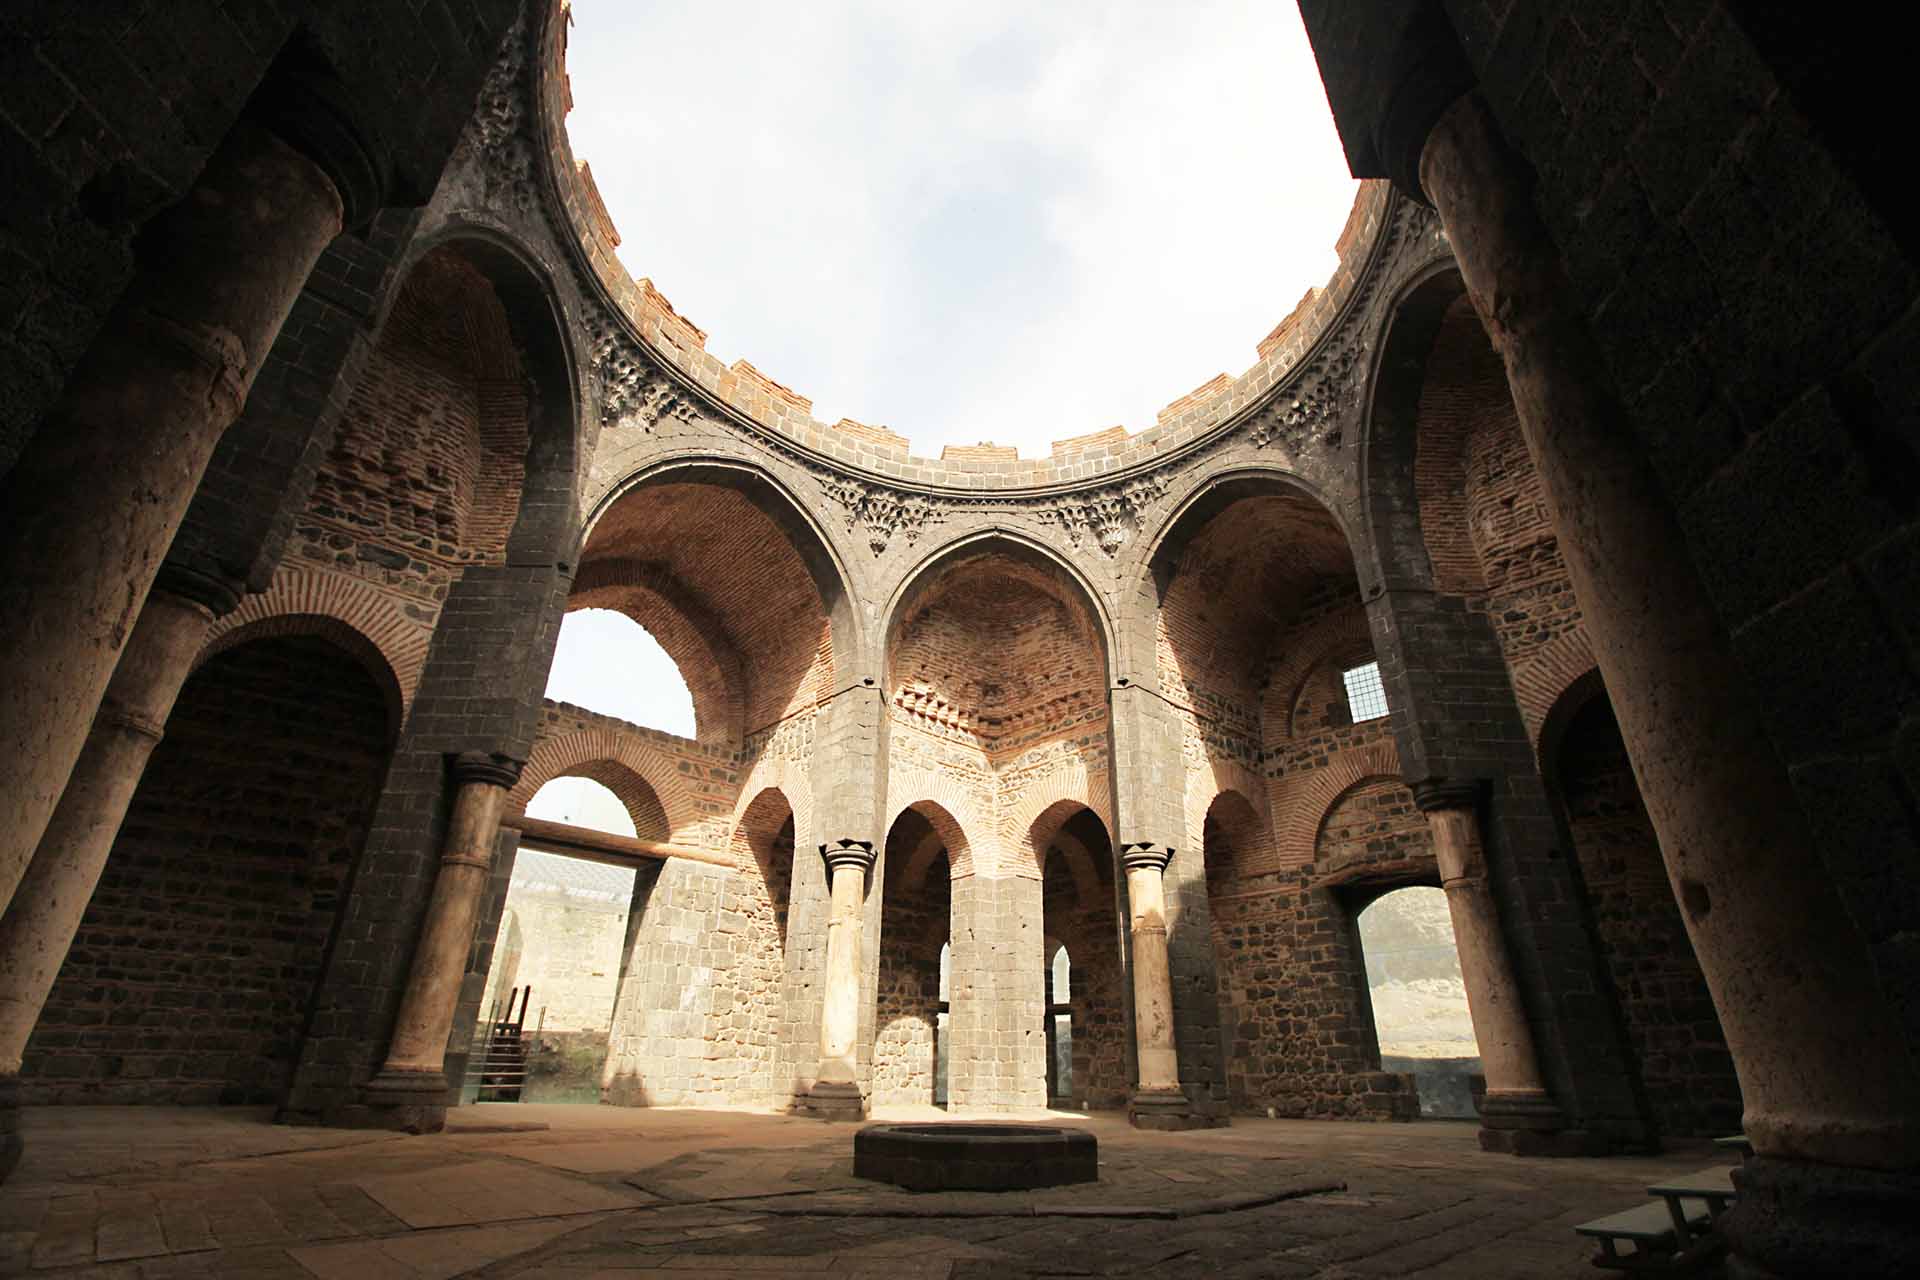 Chiêm ngưỡng vẻ kỳ vĩ của Diyarbakir - Tường thành dài thứ 2 thế giới bị ảnh hưởng bởi động đất tại Thổ Nhĩ Kỳ - Ảnh 16.